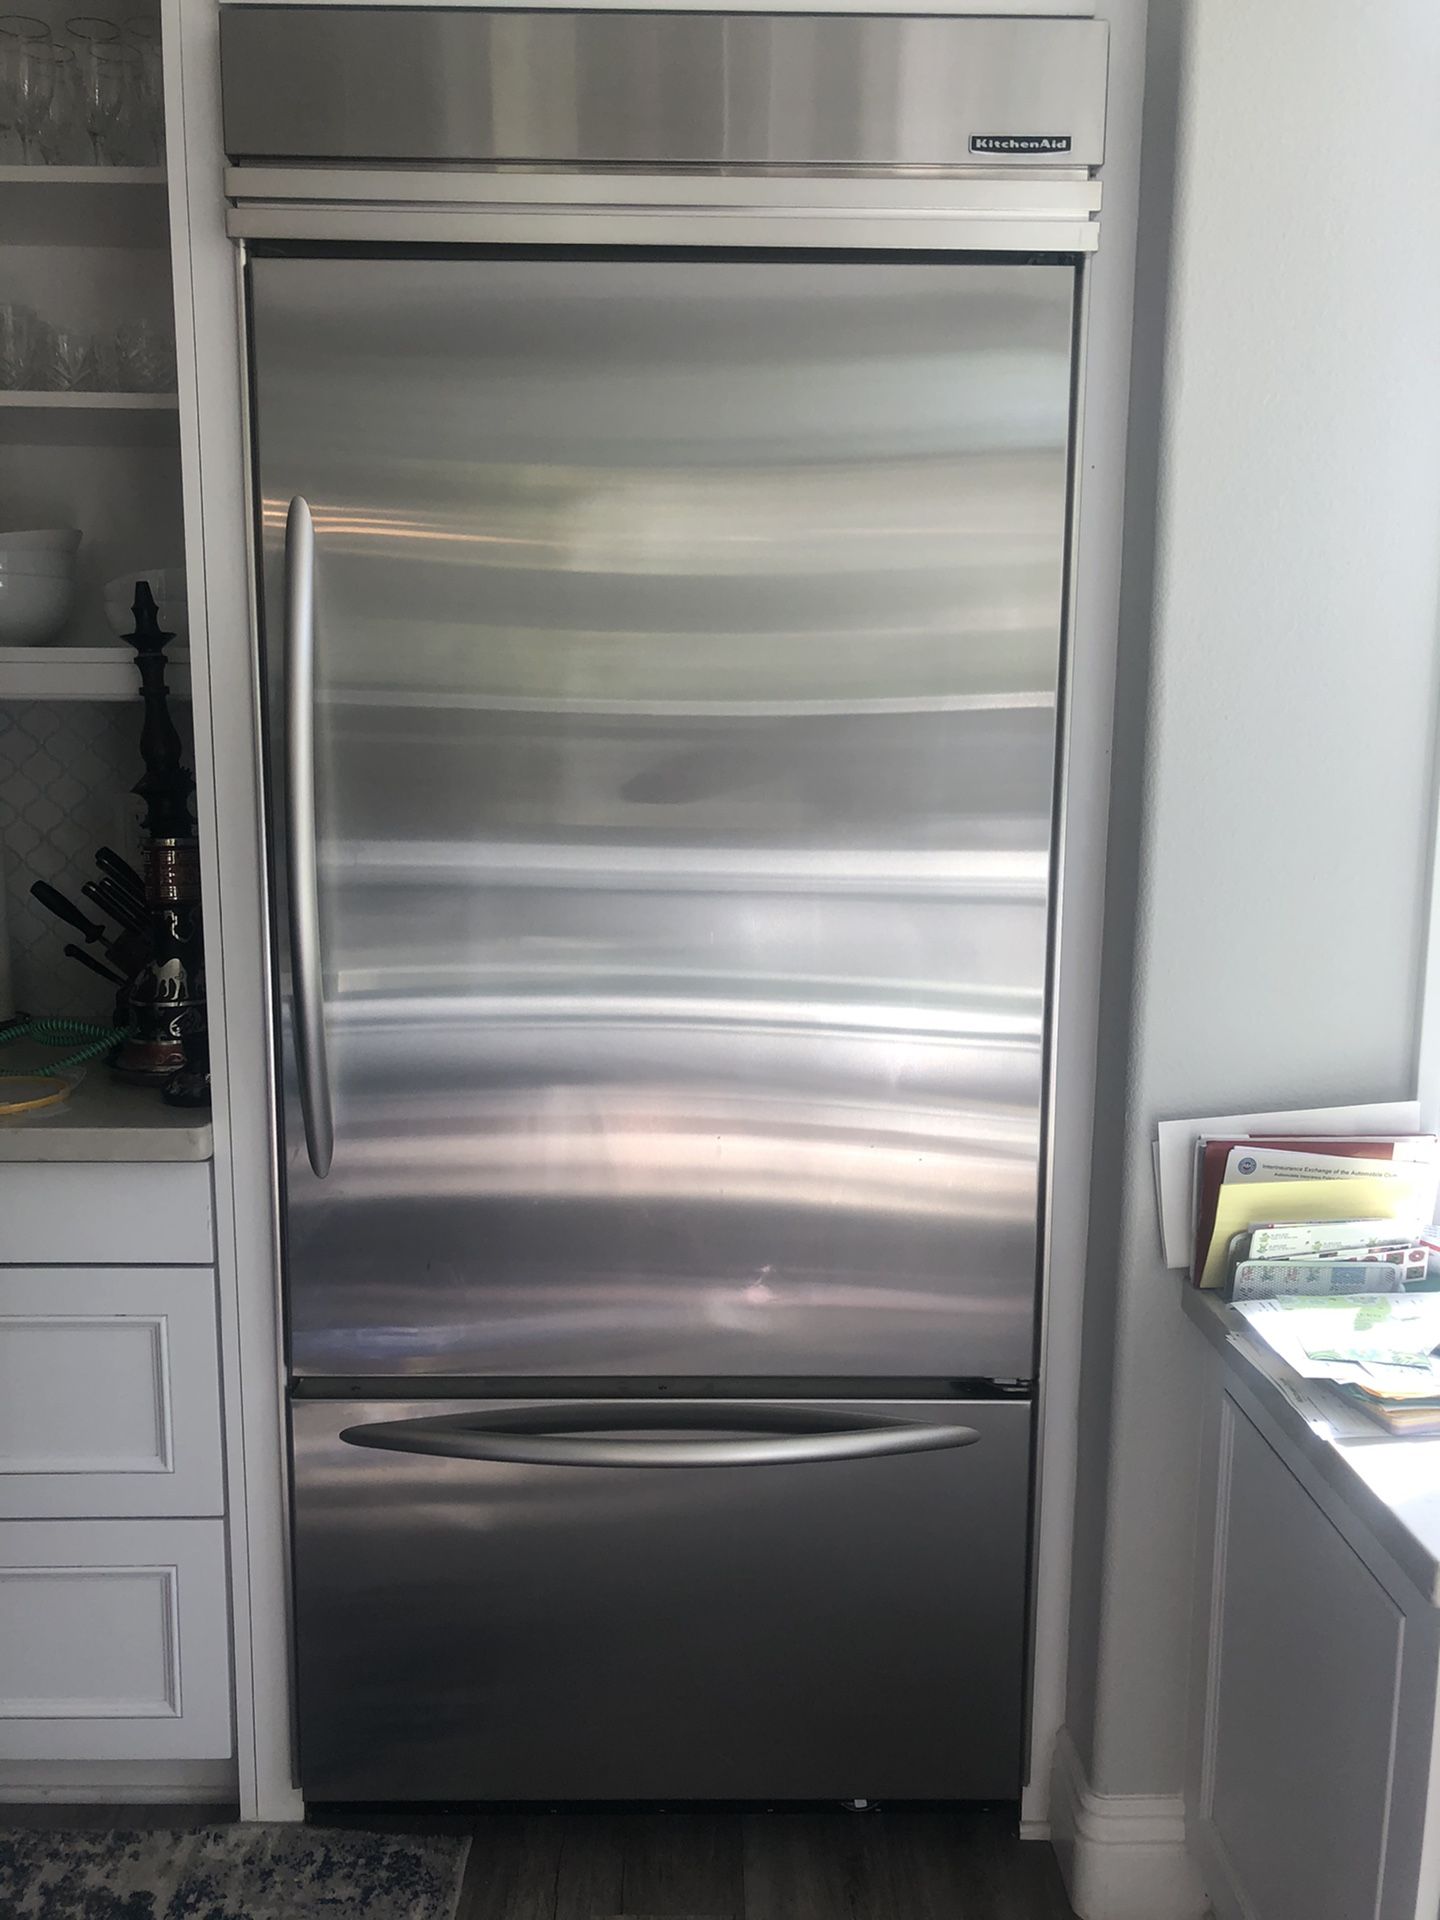 Beautiful Kitchenaid refrigerator with bottom freezer - make an offer!